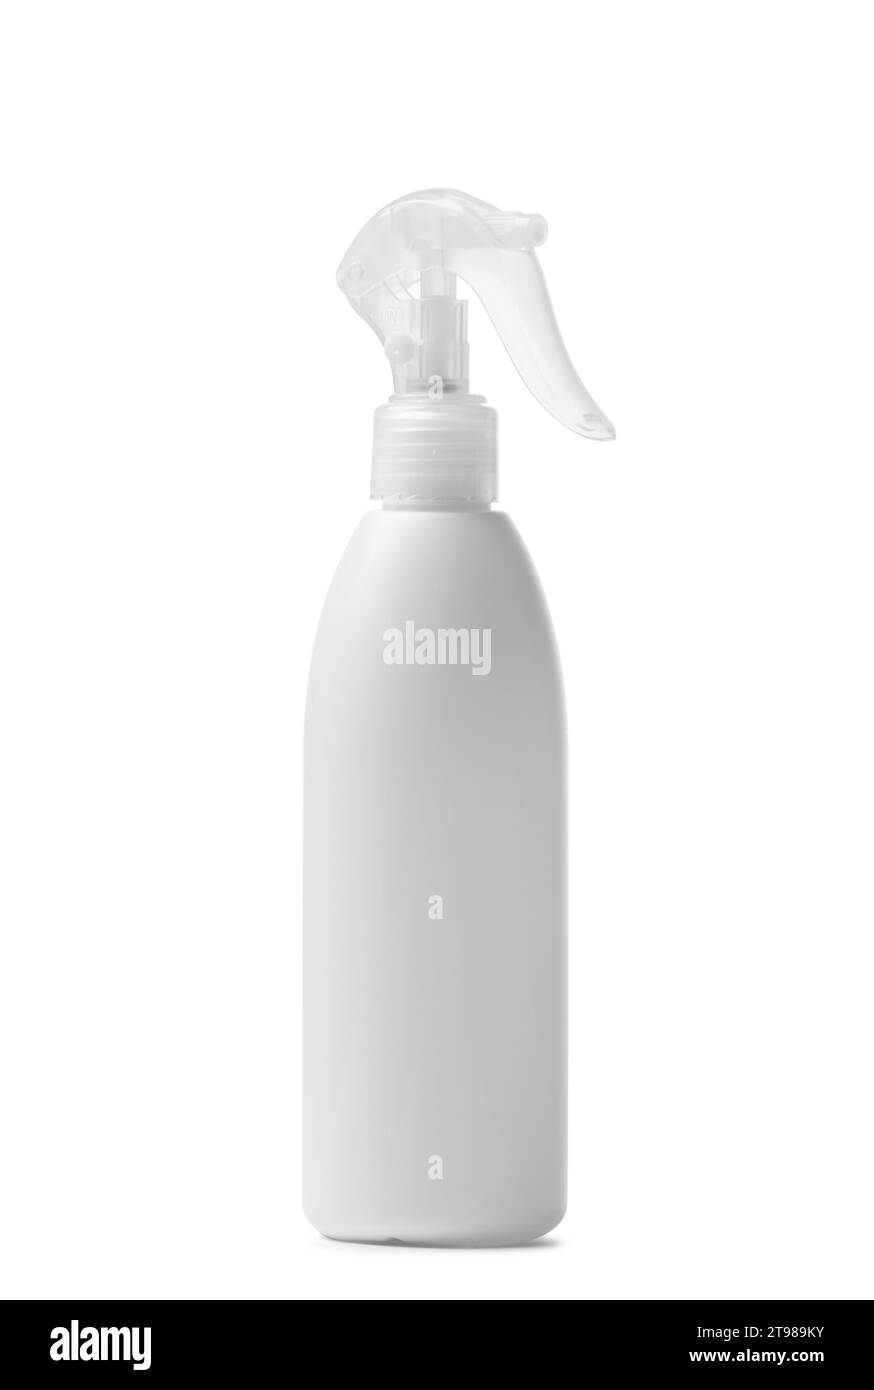 Weiße Spritzflasche aus Kunststoff für Haushaltschemikalien, Reinigungsmittel, Reinigungsmittel, Desinfektionsmittel, Antiseptika, isoliert auf weiß. Modell für Verpackung Stockfoto